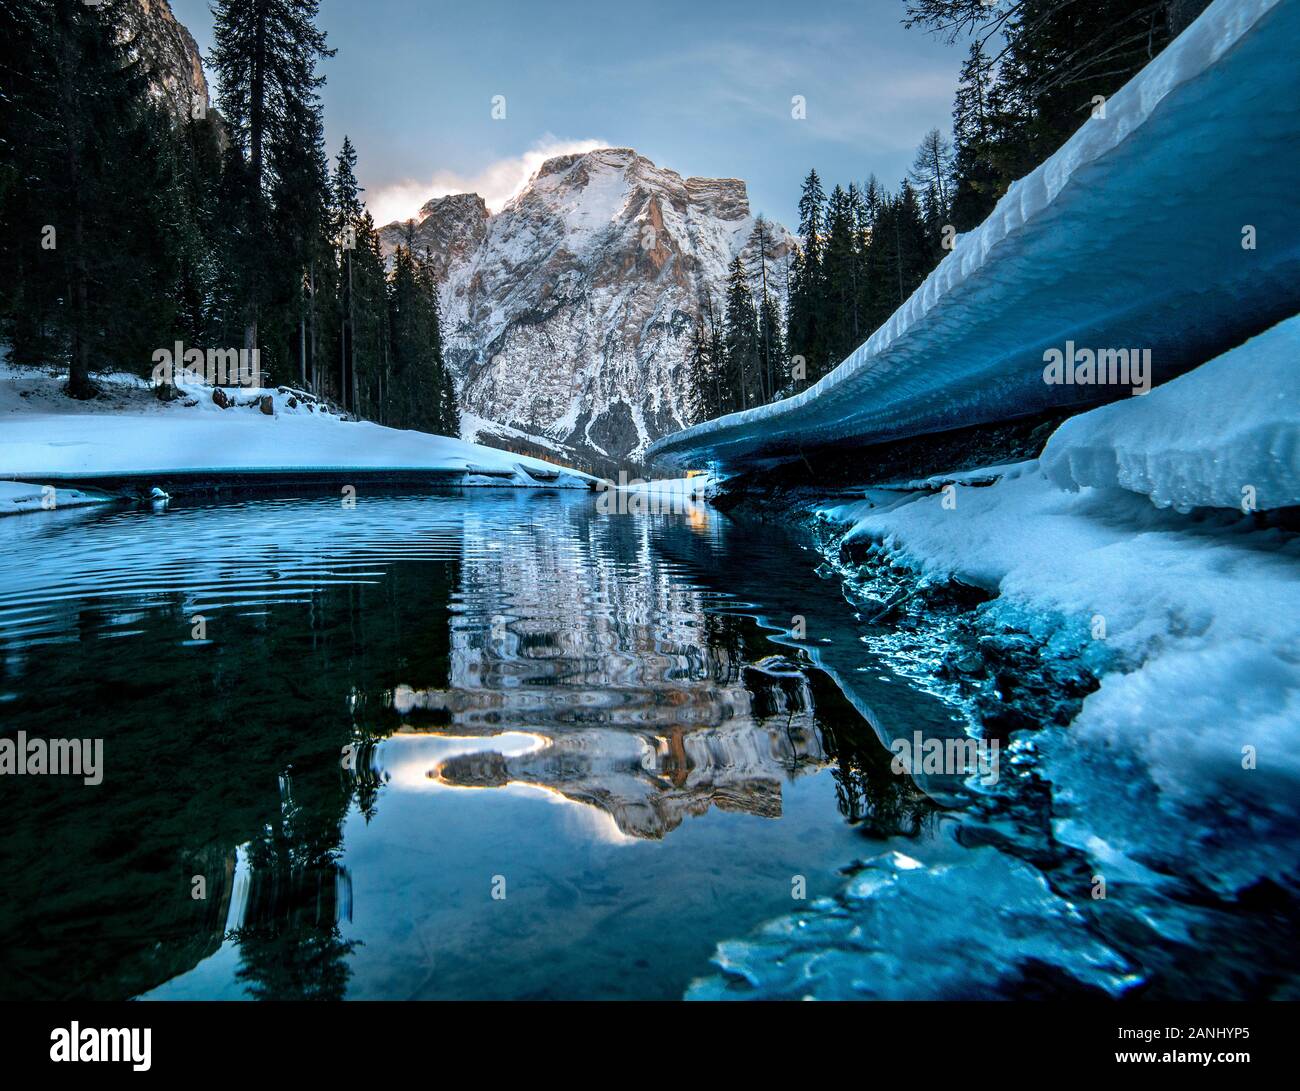 Lago di Braies, Dolomiti, lac gelé avec glace brillante Banque D'Images